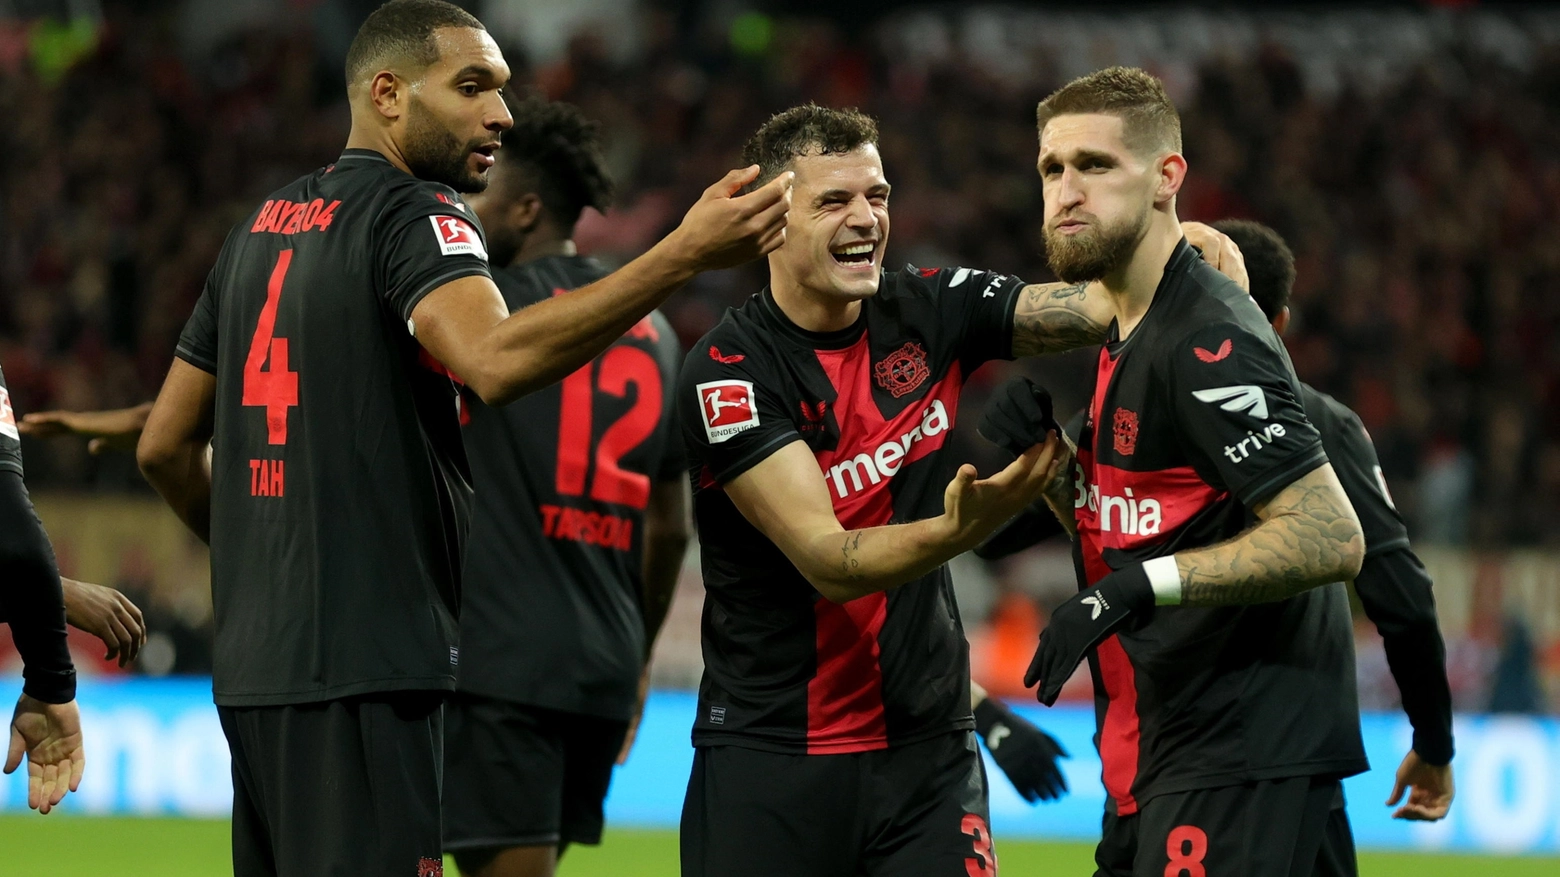 Nella ventitreesima giornata di Bundesliga il Bayern Leverkusn batte il Mainz 2-1 ed entra nella storia del campionato tedesco. Rispondono i bavaresi che battono il Lipsia, ma il distacco è invariato. Cade il Borussia che ora deve guardarsi le spalle.